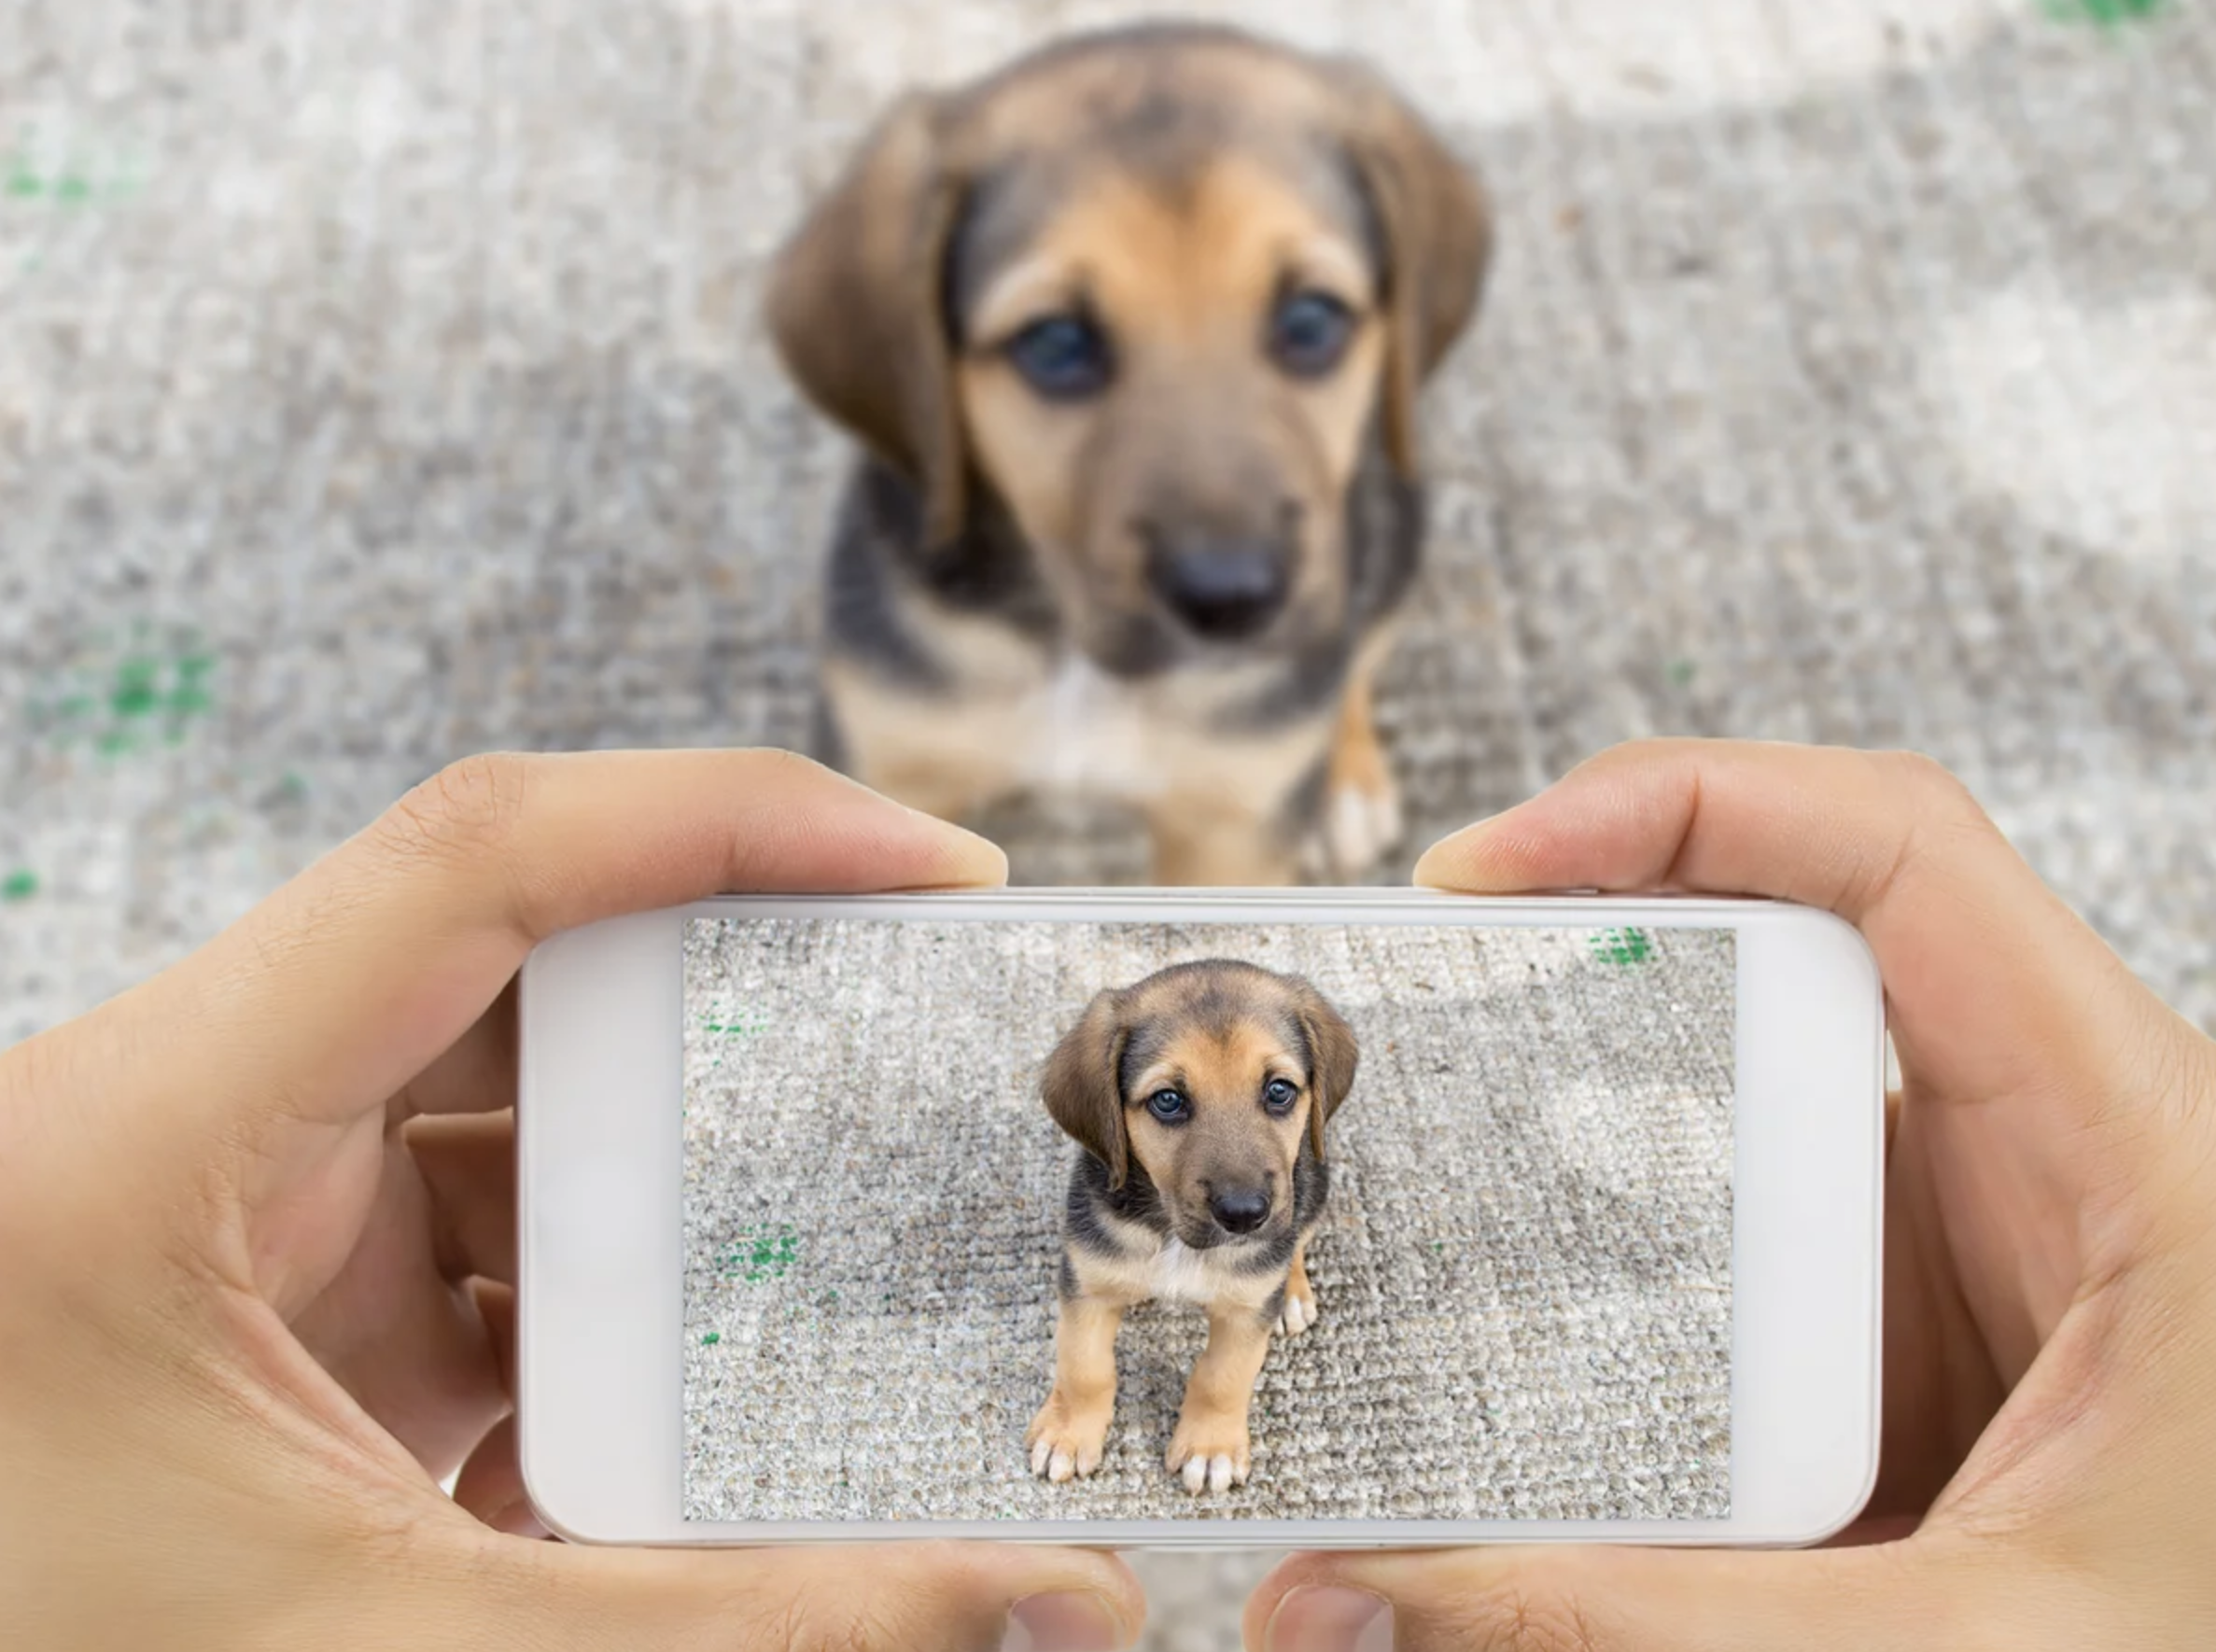  Solución a mascotas perdidas: estudiantes de la USM desarrollan innovadora app para ir en su búsqueda